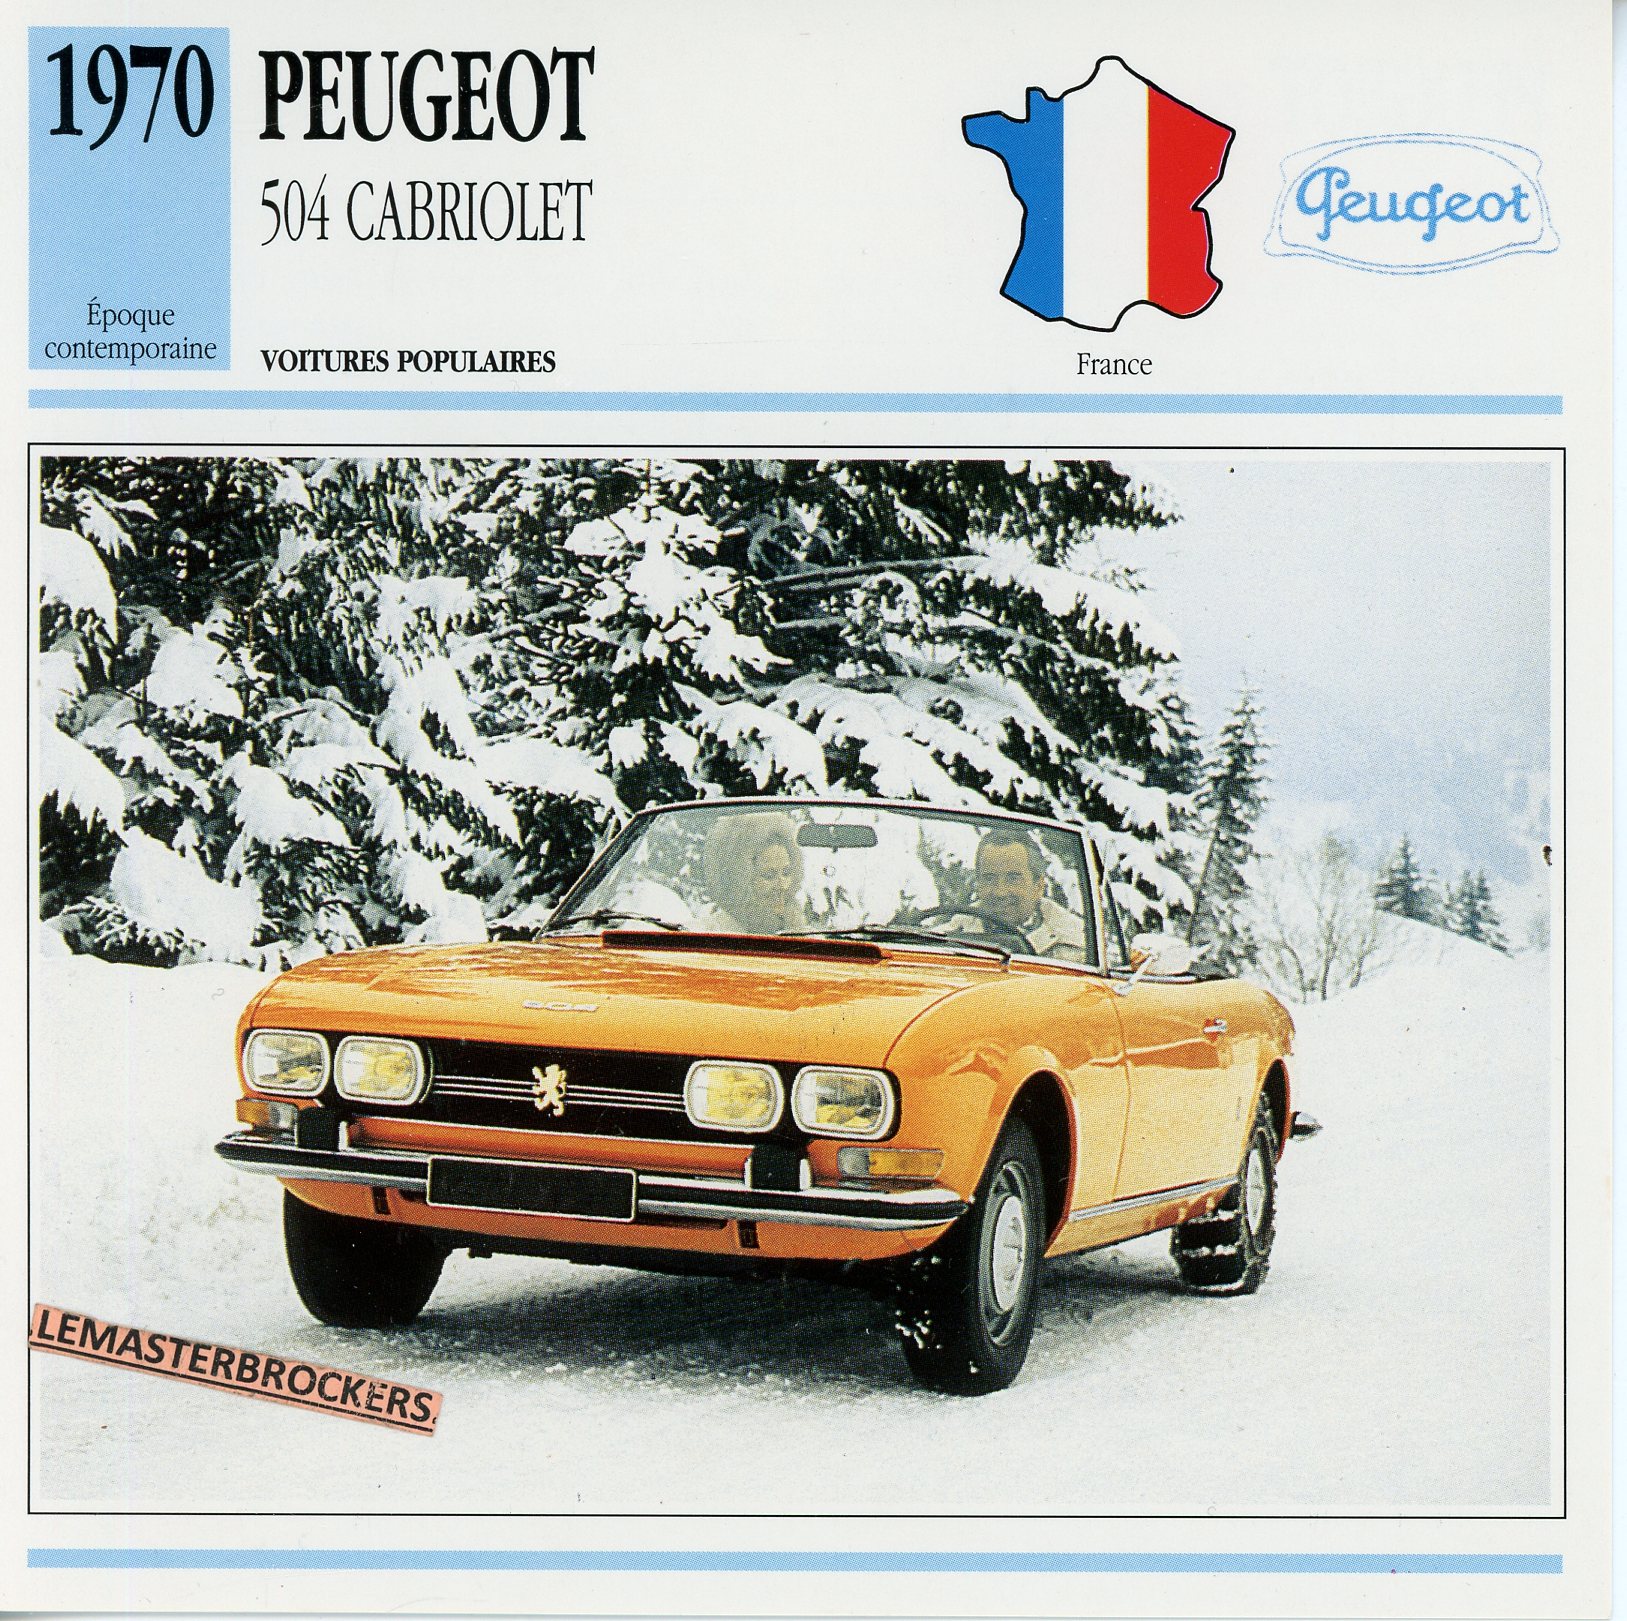 PEUGEOT-504-CABRIOLET-1970-FICHE-AUTO-ATLAS-LEMASTERBROCKERS